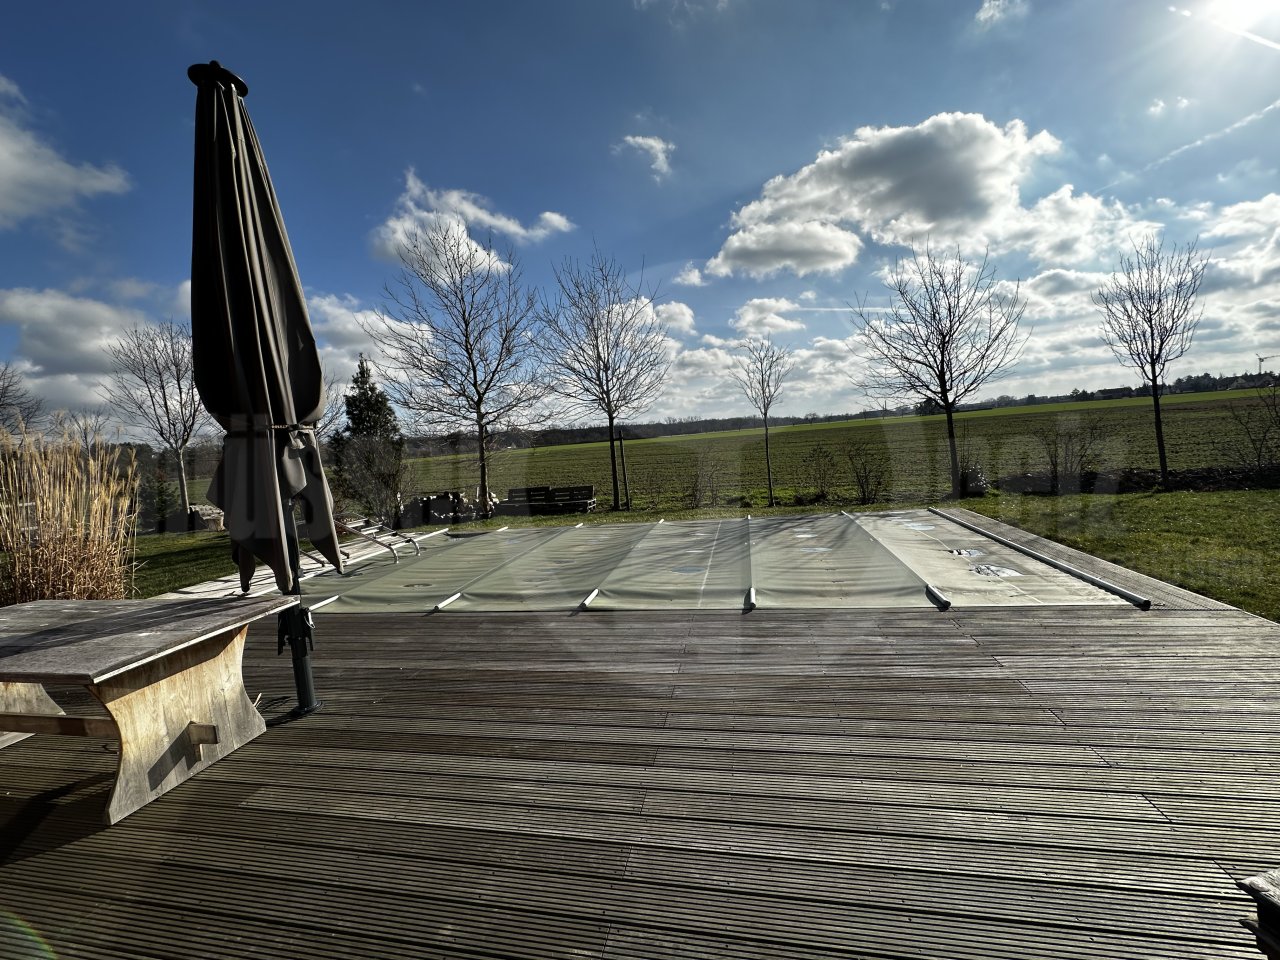 Terrasse mit Pool